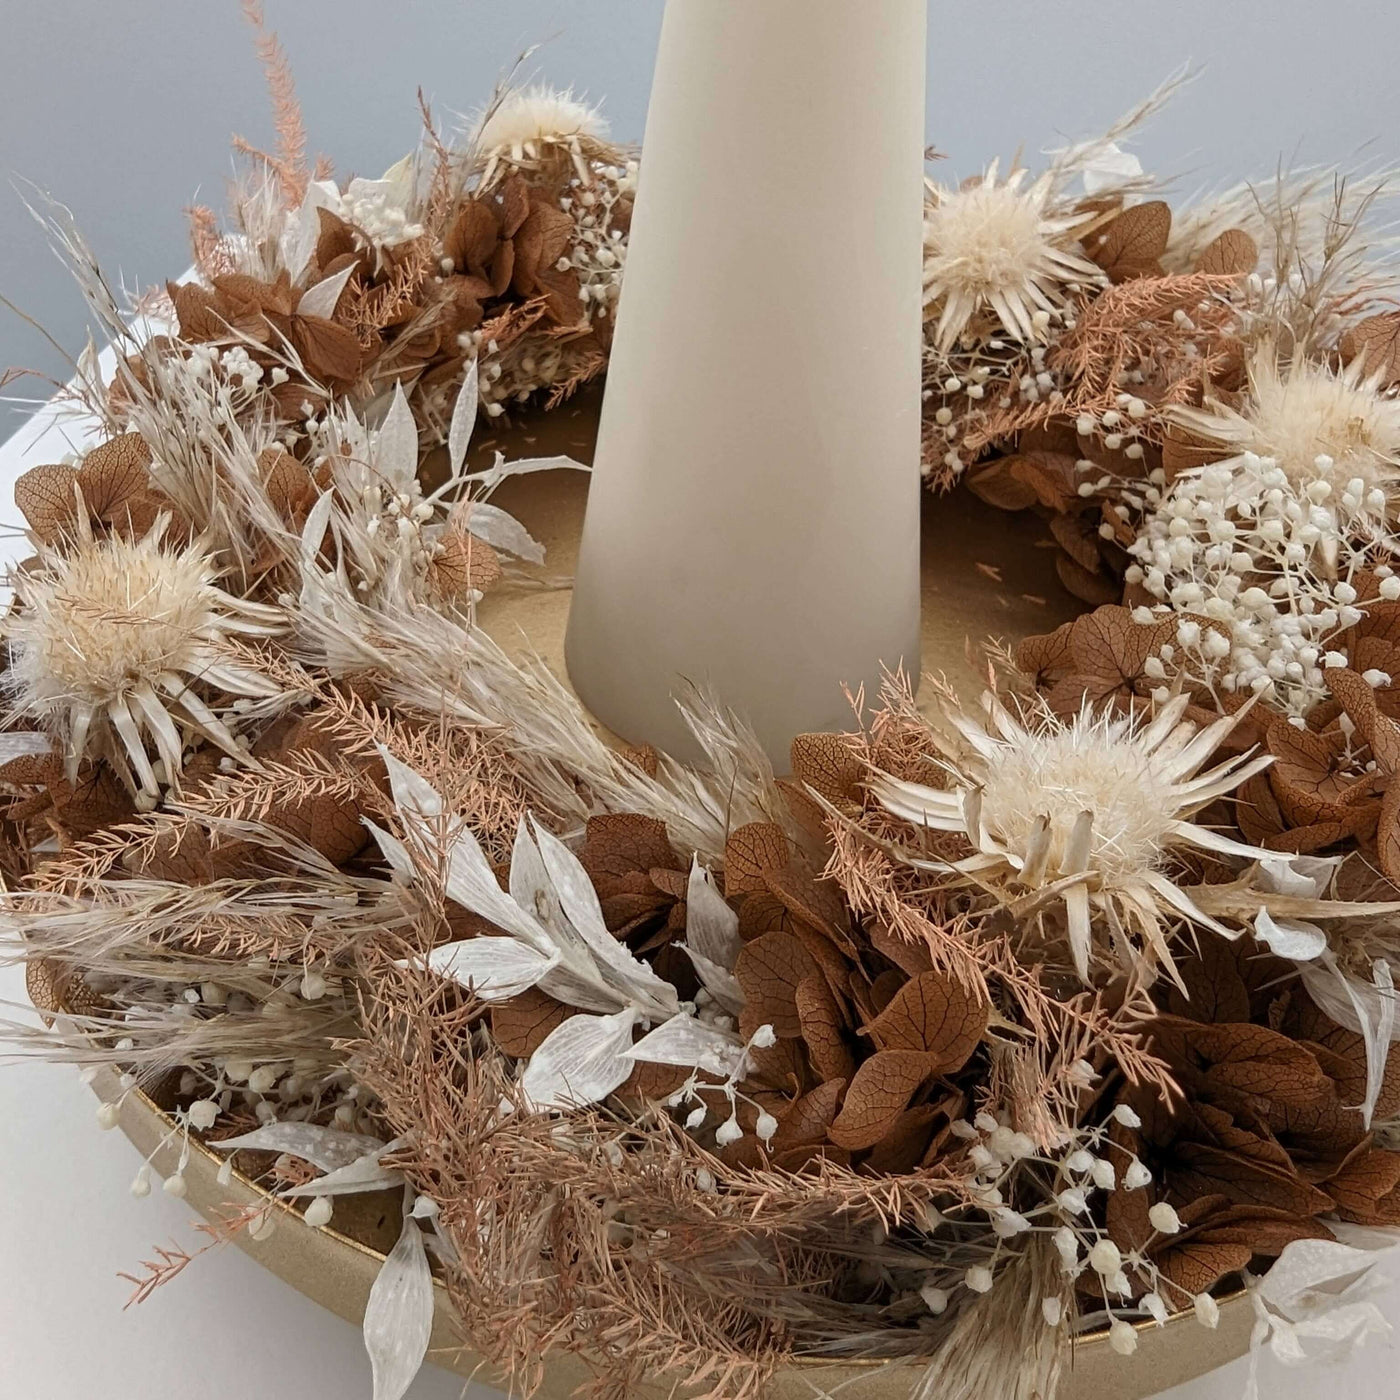 Taktile Herbstfreuden: Der Hortensien-Adventskranz mit Disteln in braun-weiß